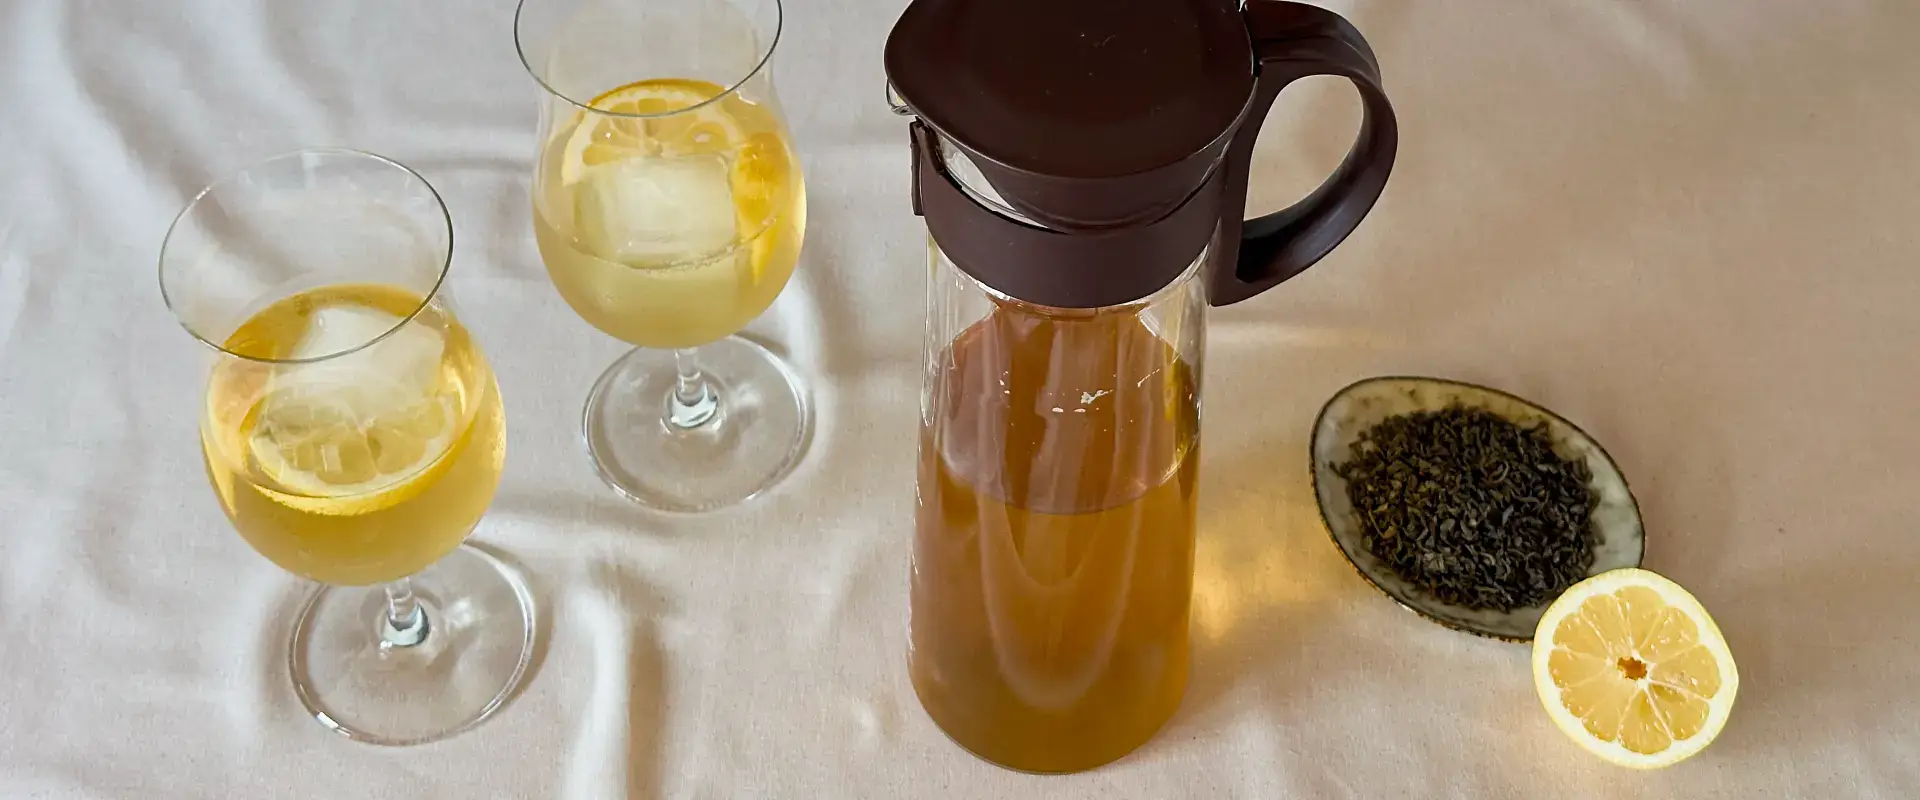 Mizudashi: Tee kalt aufgießen